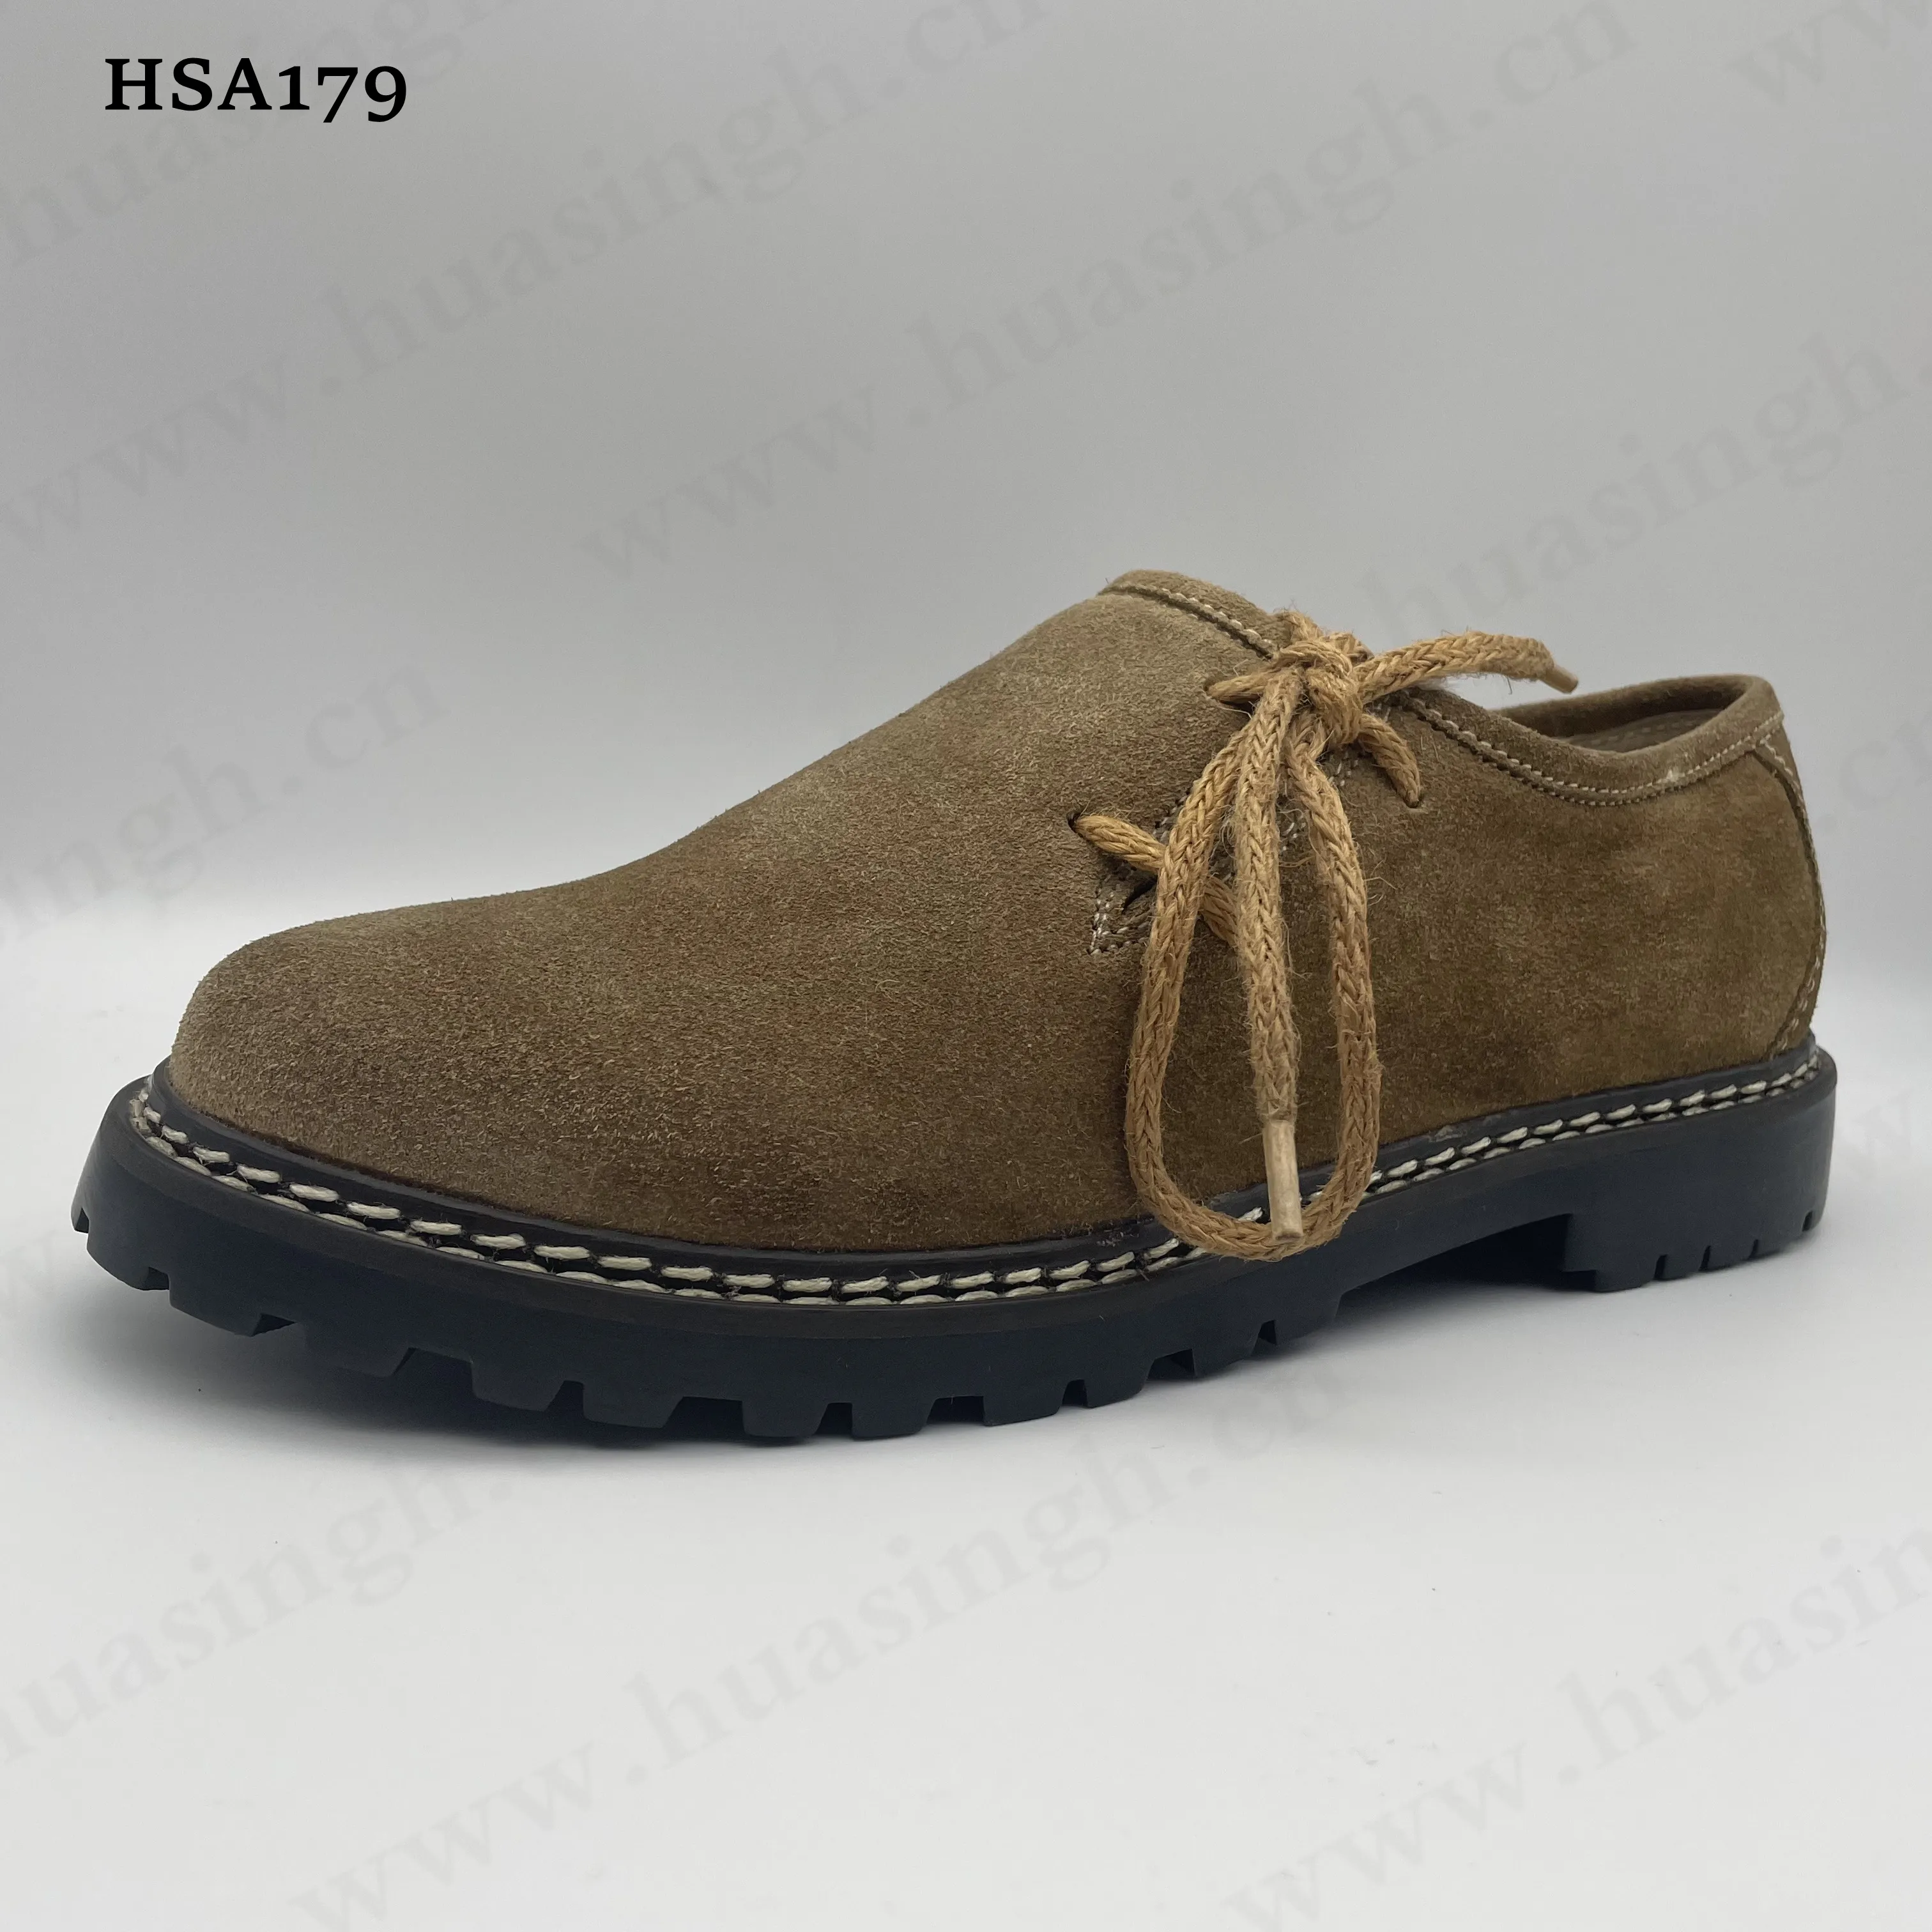 LXG รองเท้าหนังสำหรับผู้ชาย HSA179,รองเท้าเดรสผ้าลูกไม้เชือกป่านด้านข้างพื้นรองเท้ายางเรียบใส่ง่ายเป็นที่นิยมในตลาดยุโรป